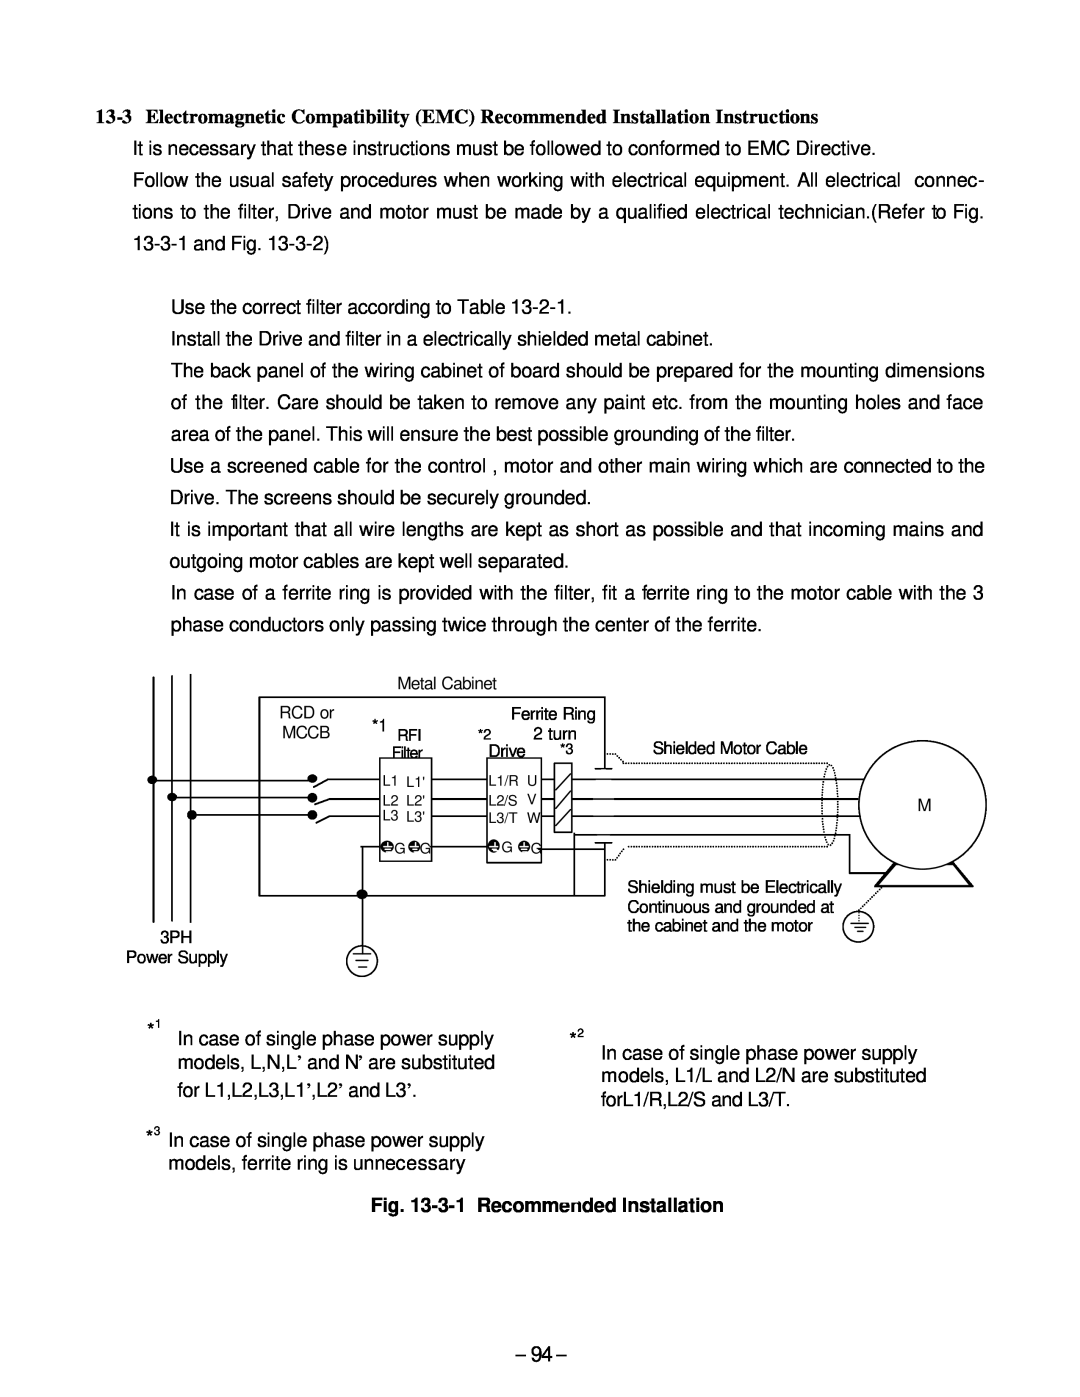 GE AF-300, C11 manual 3-1 Recommended Installation 